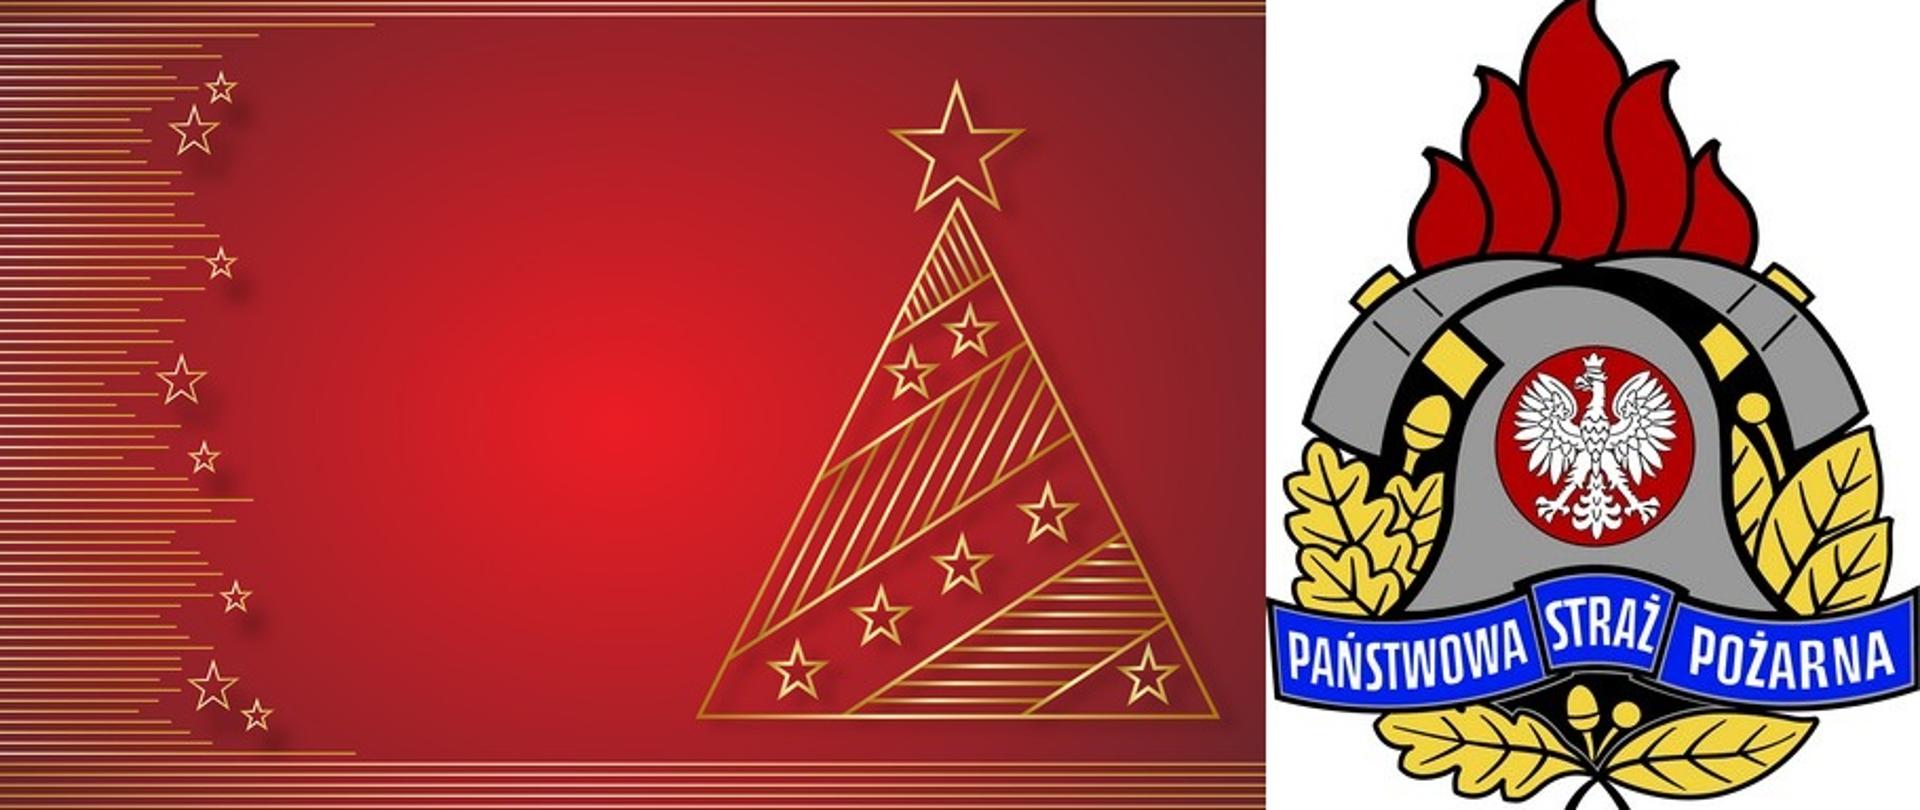 Zdjęcie przedstawia rysunkową choinkę na czerwonym tle. Obok logo Państwowej Straży Pożarnej